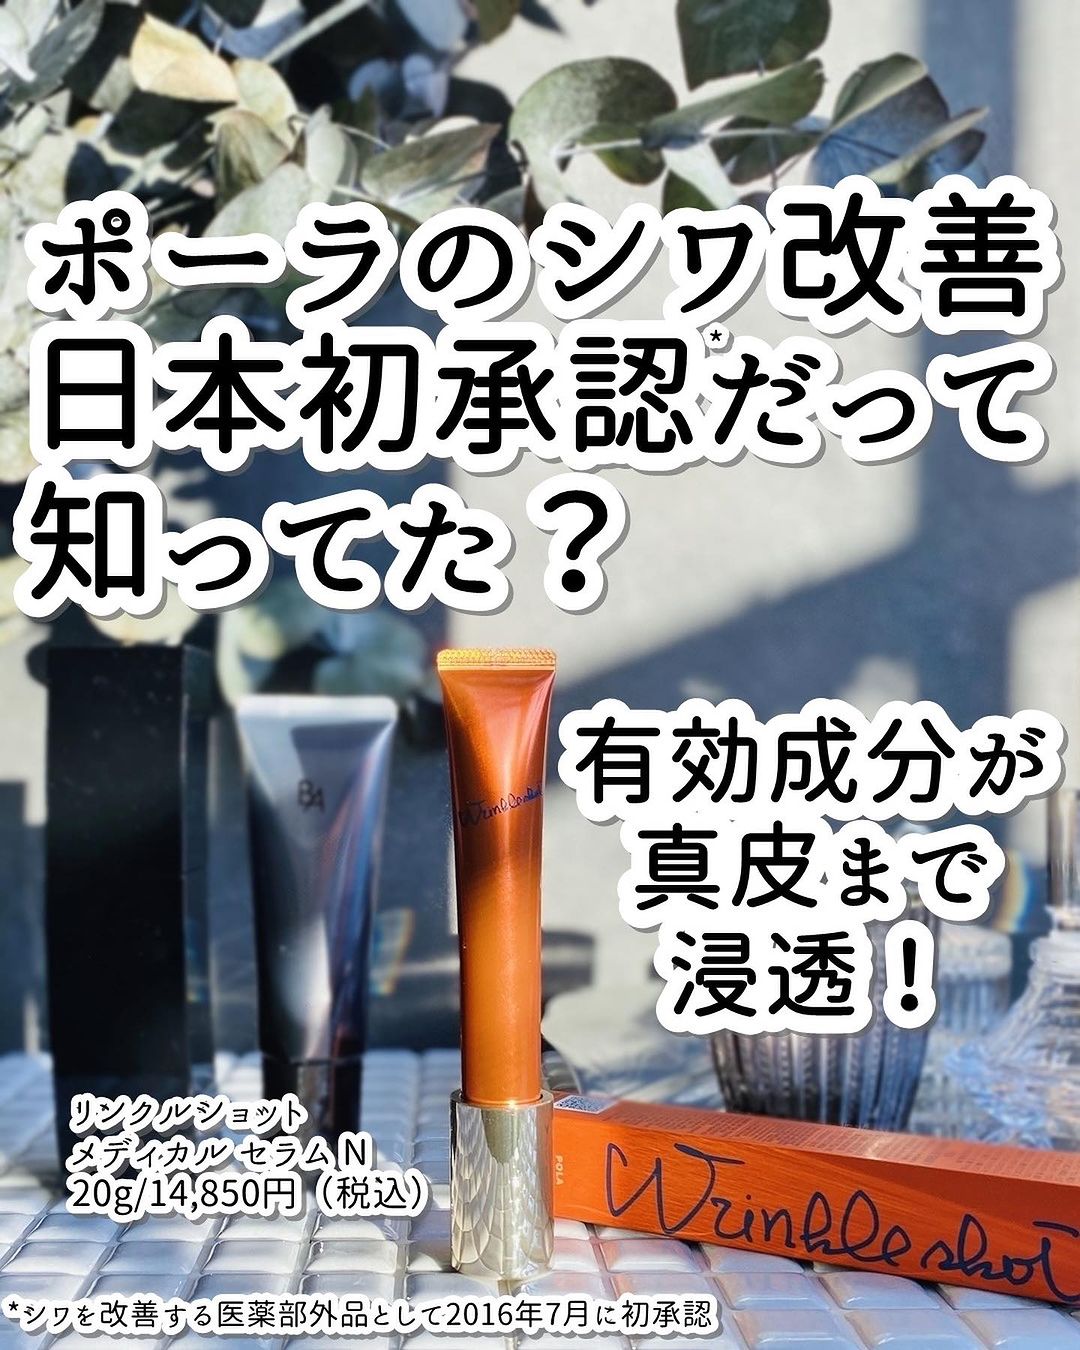 口コミ投稿：日本で初めて（2016年7月。シワを改善する医薬部外品有効成分として。）シワを改善す…